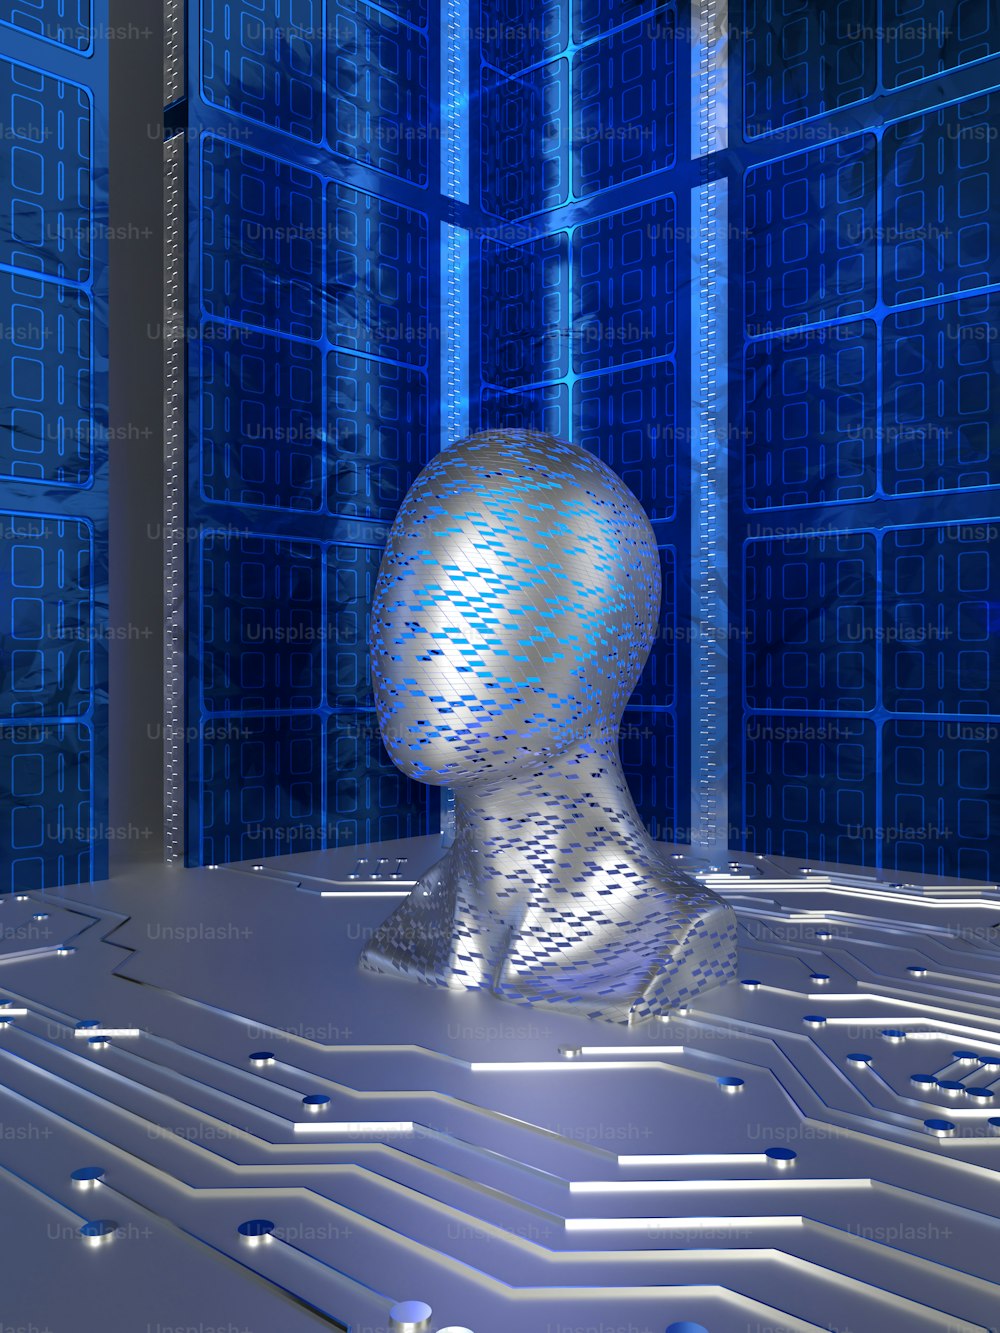 une image générée par ordinateur de la tête d’une personne devant une carte de circuit imprimé